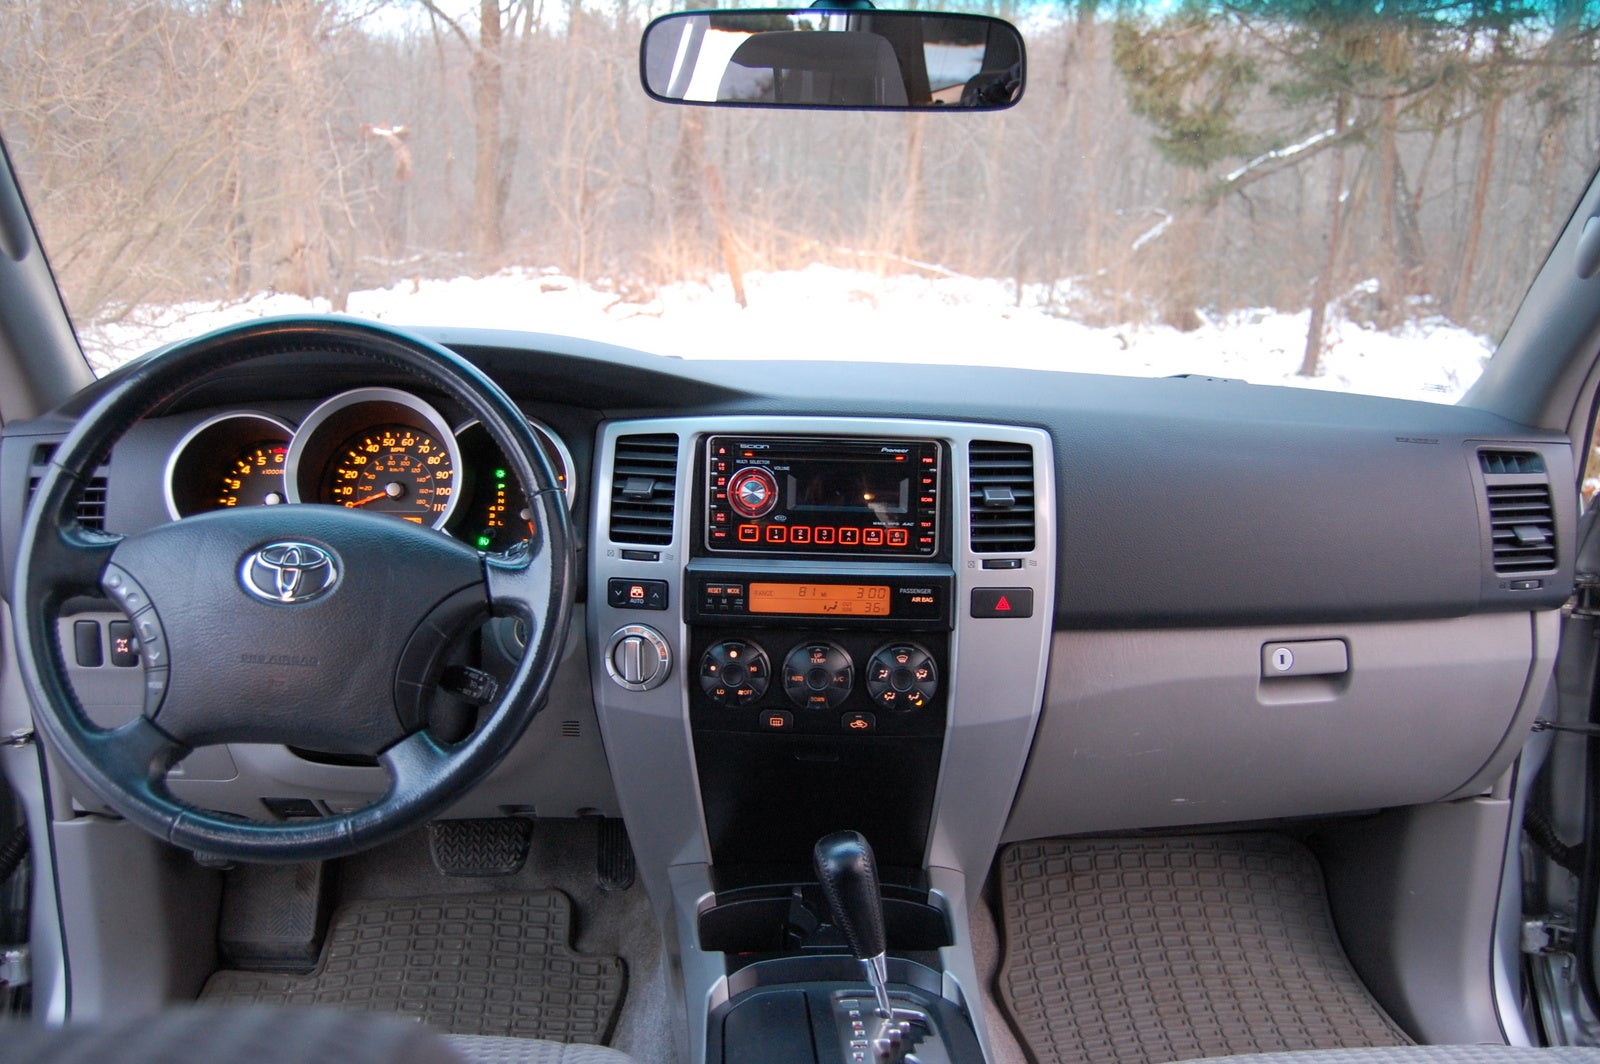 2008 Toyota 4Runner - Interior Pictures - CarGurus